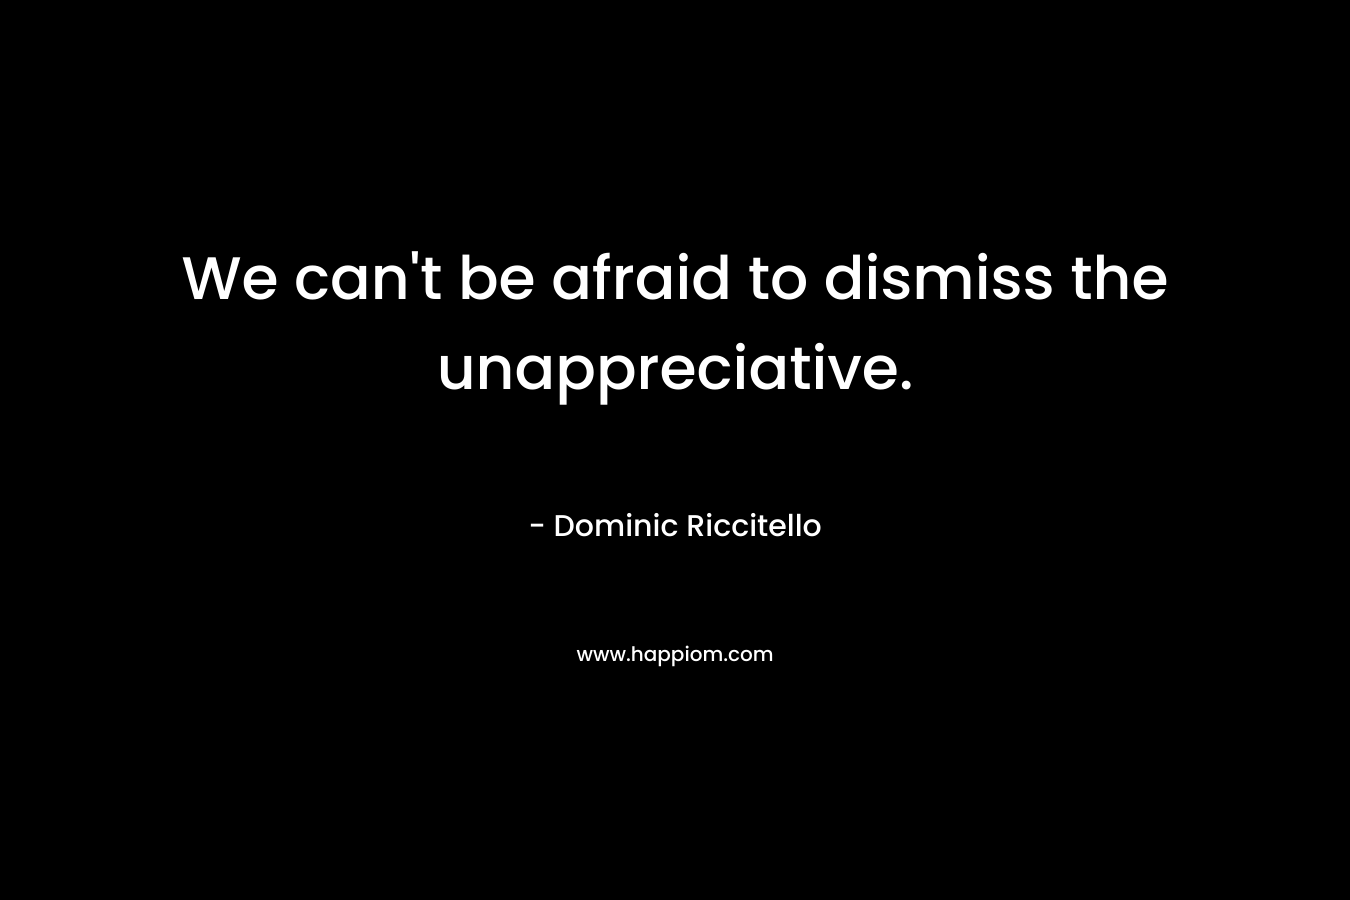 We can’t be afraid to dismiss the unappreciative. – Dominic Riccitello